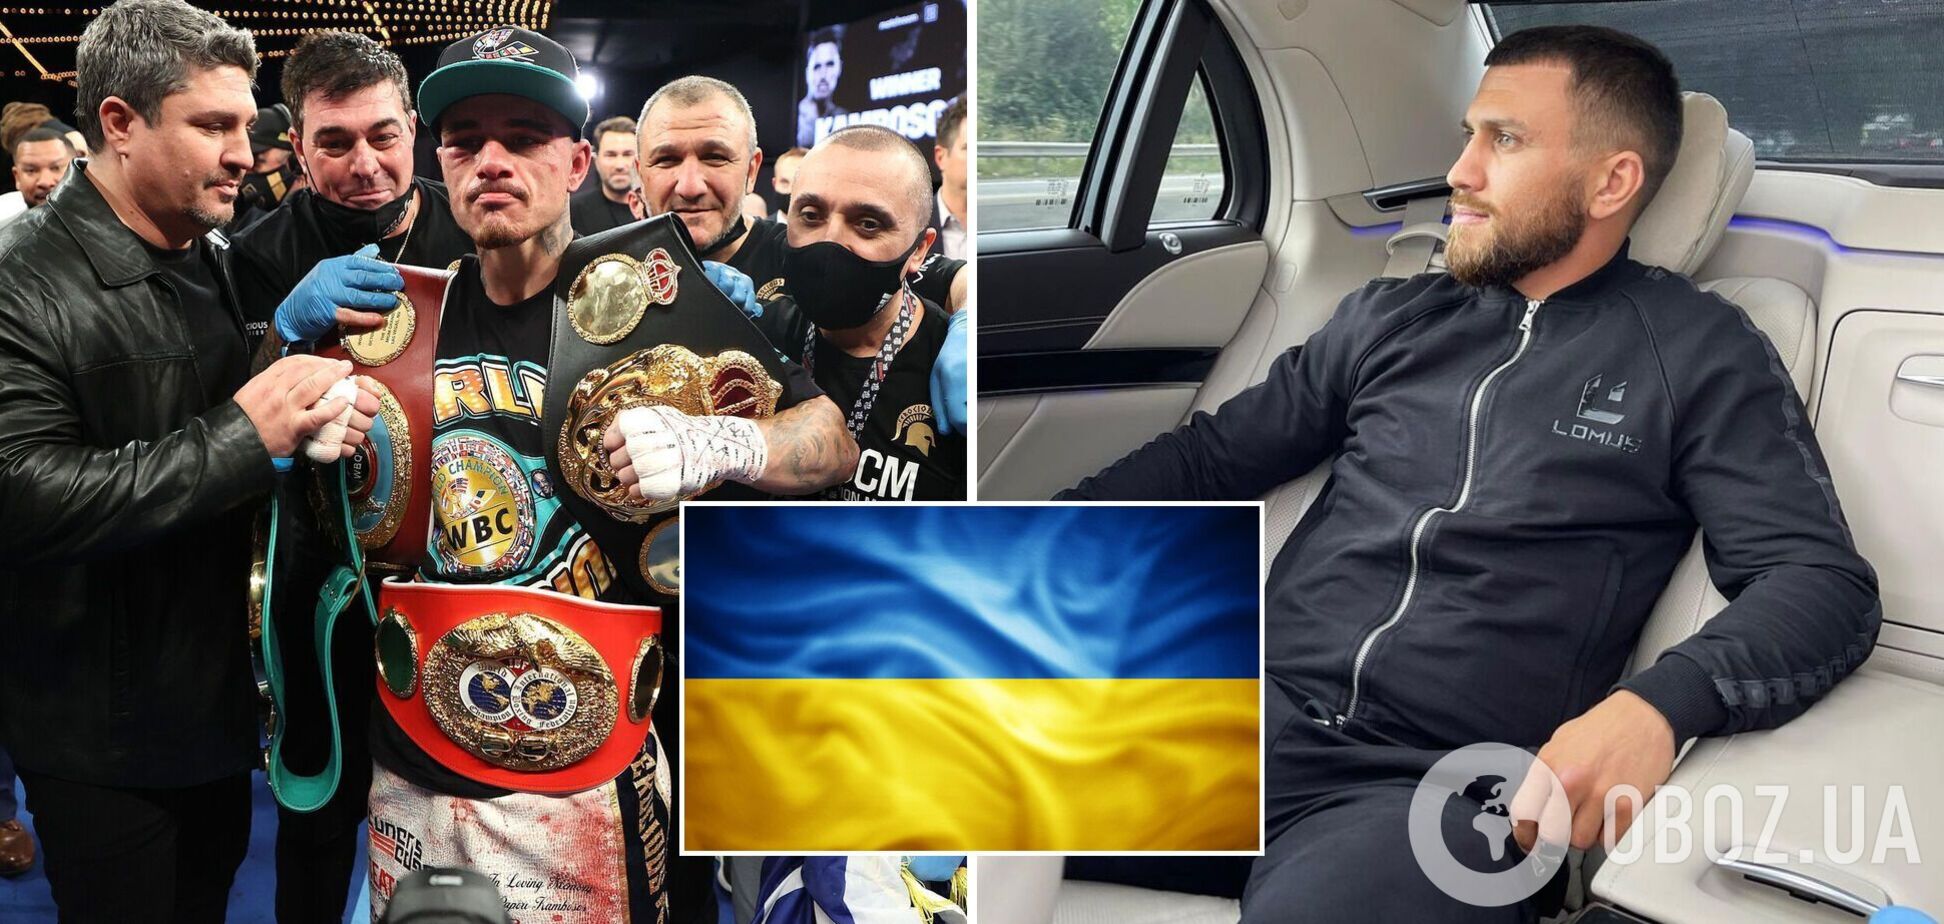 Команда Ломаченко готовит выезд боксера из Украины: Василий может вернуть себе чемпионские пояса